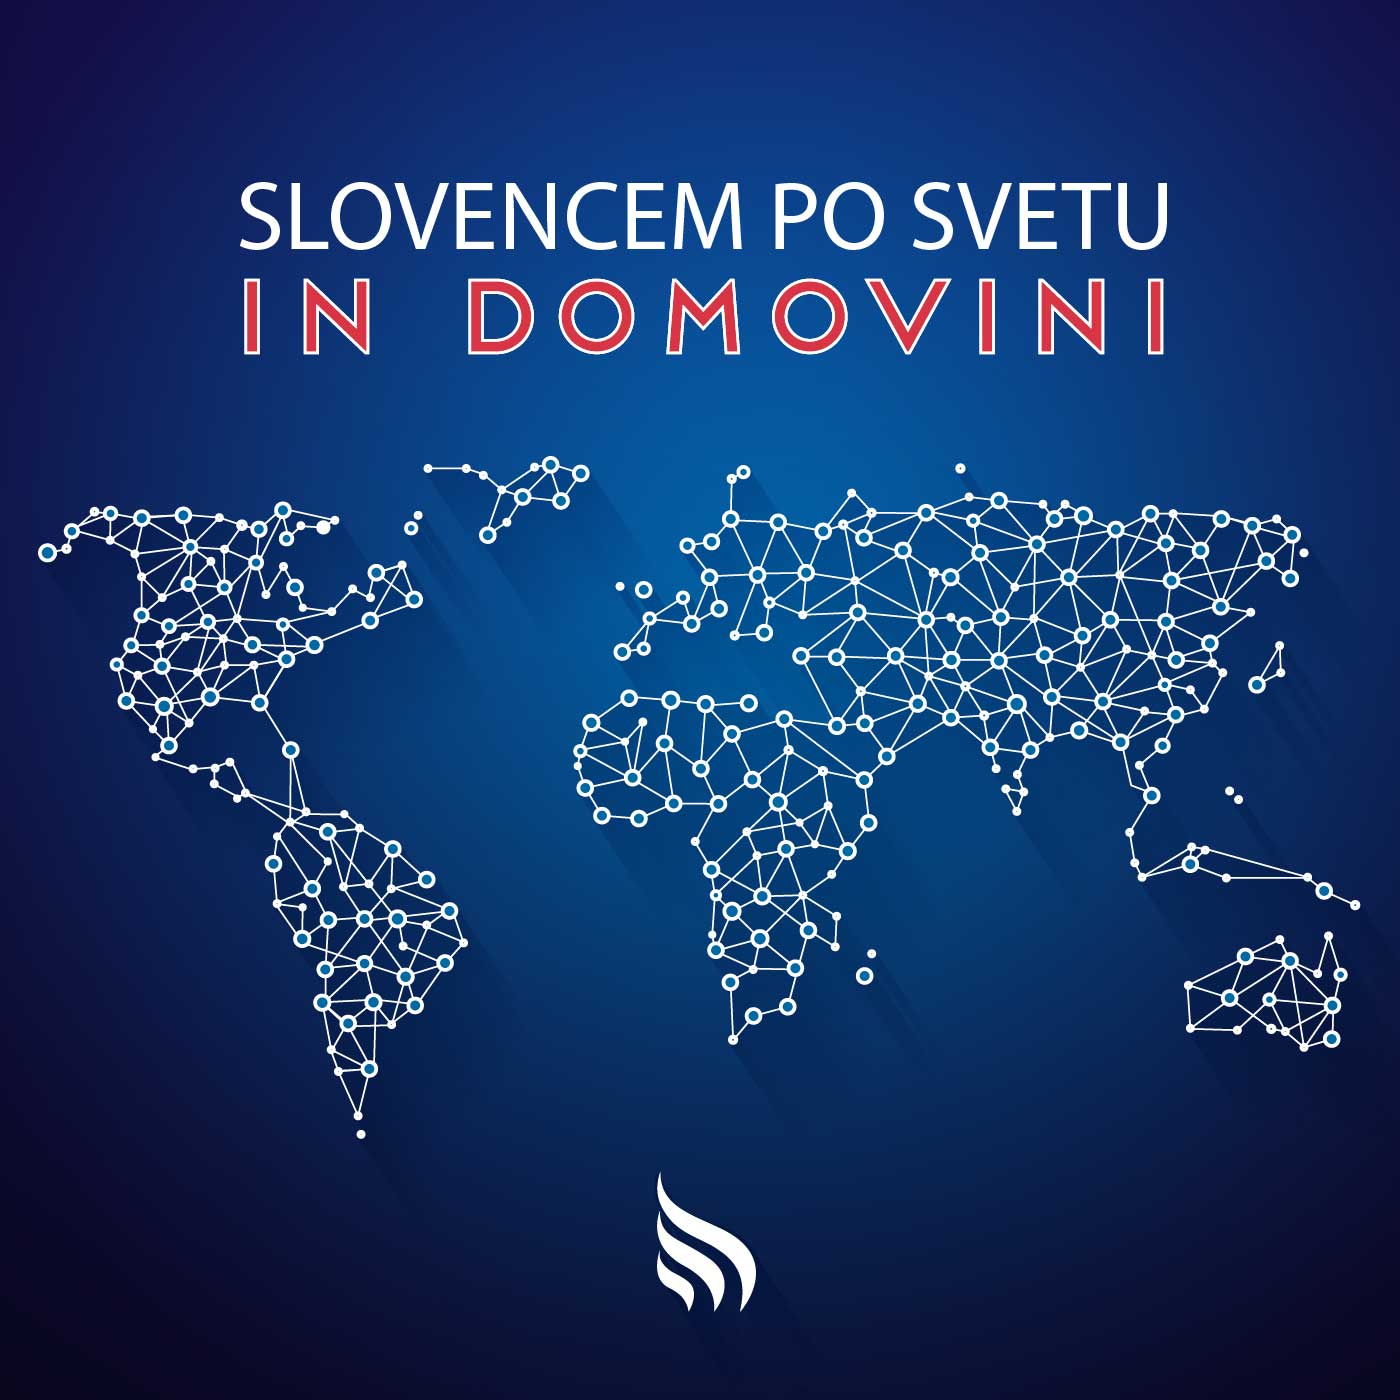 Slovencem po svetu in domovini